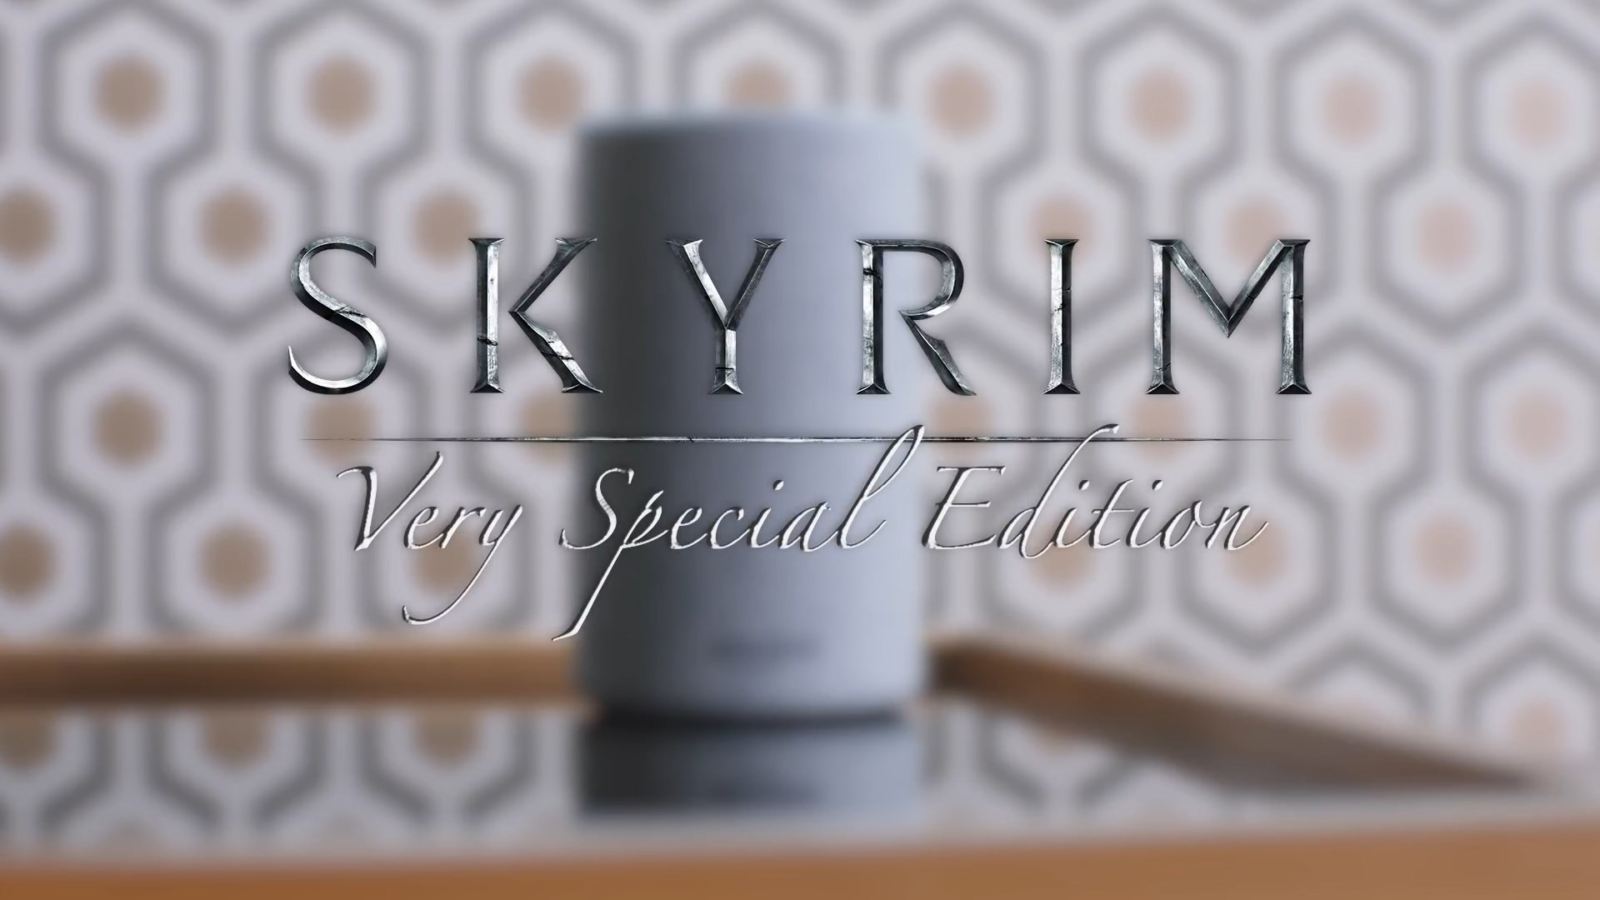 Skyrim: Very Special Edition